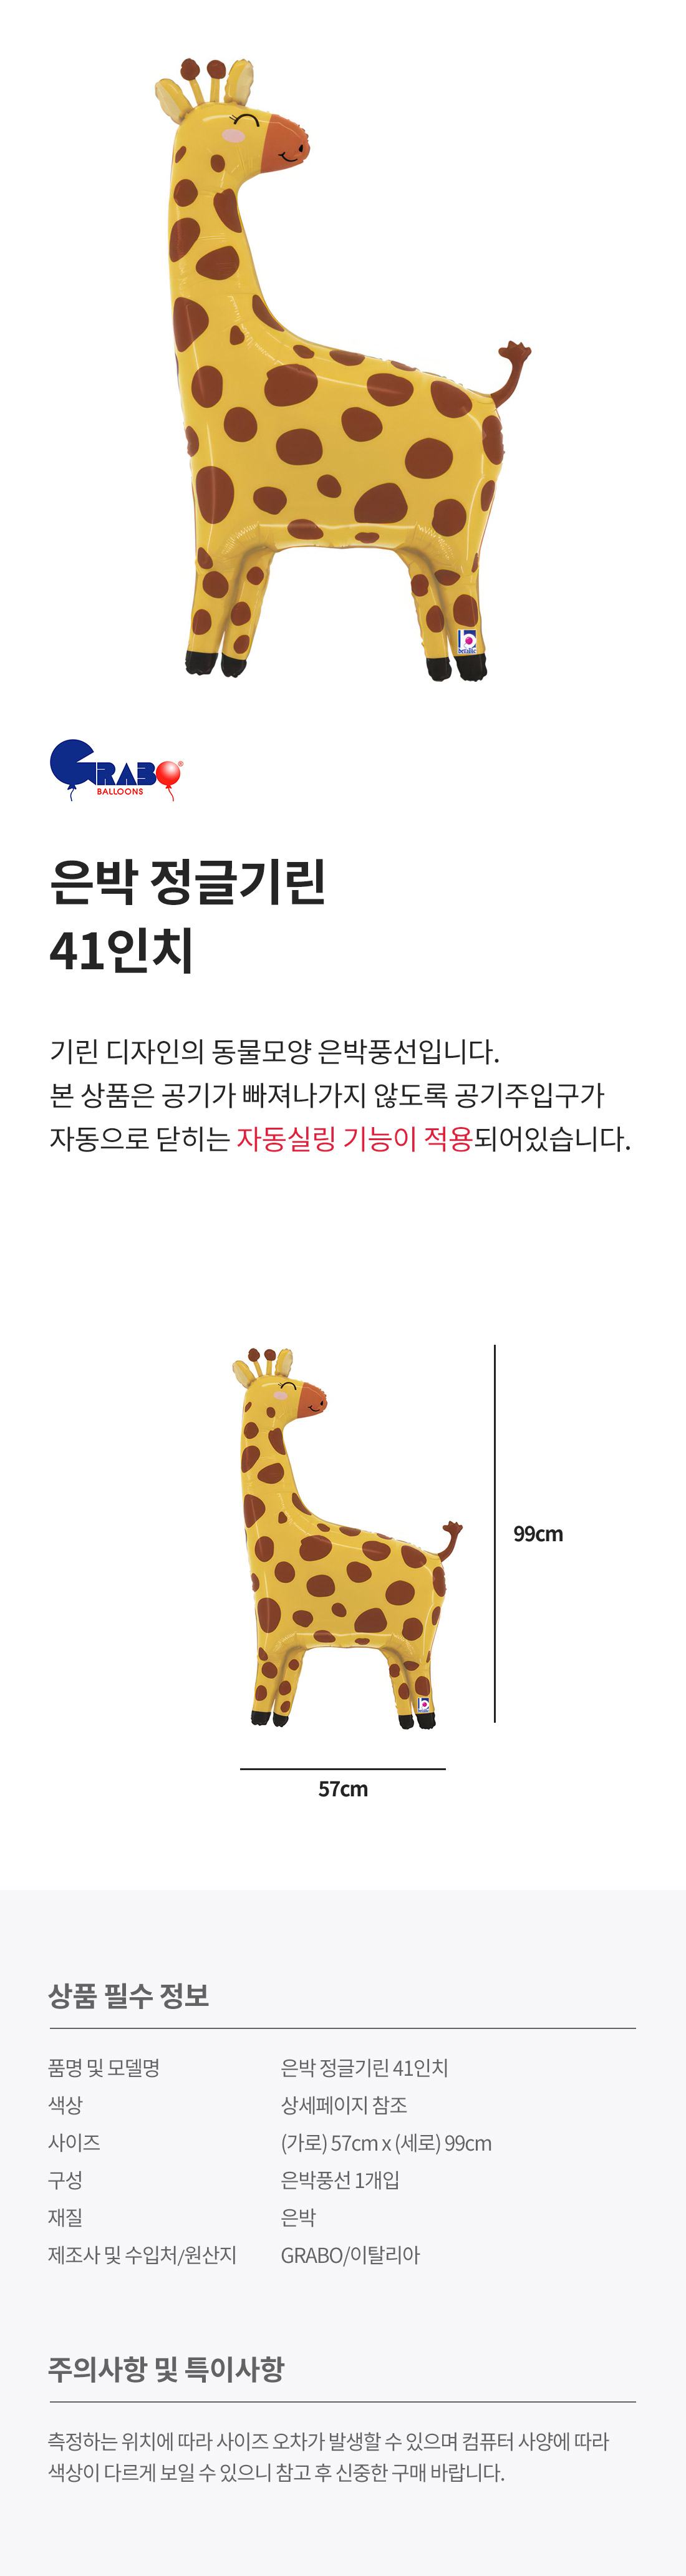 20240425_fb_giraffe_roll.jpg